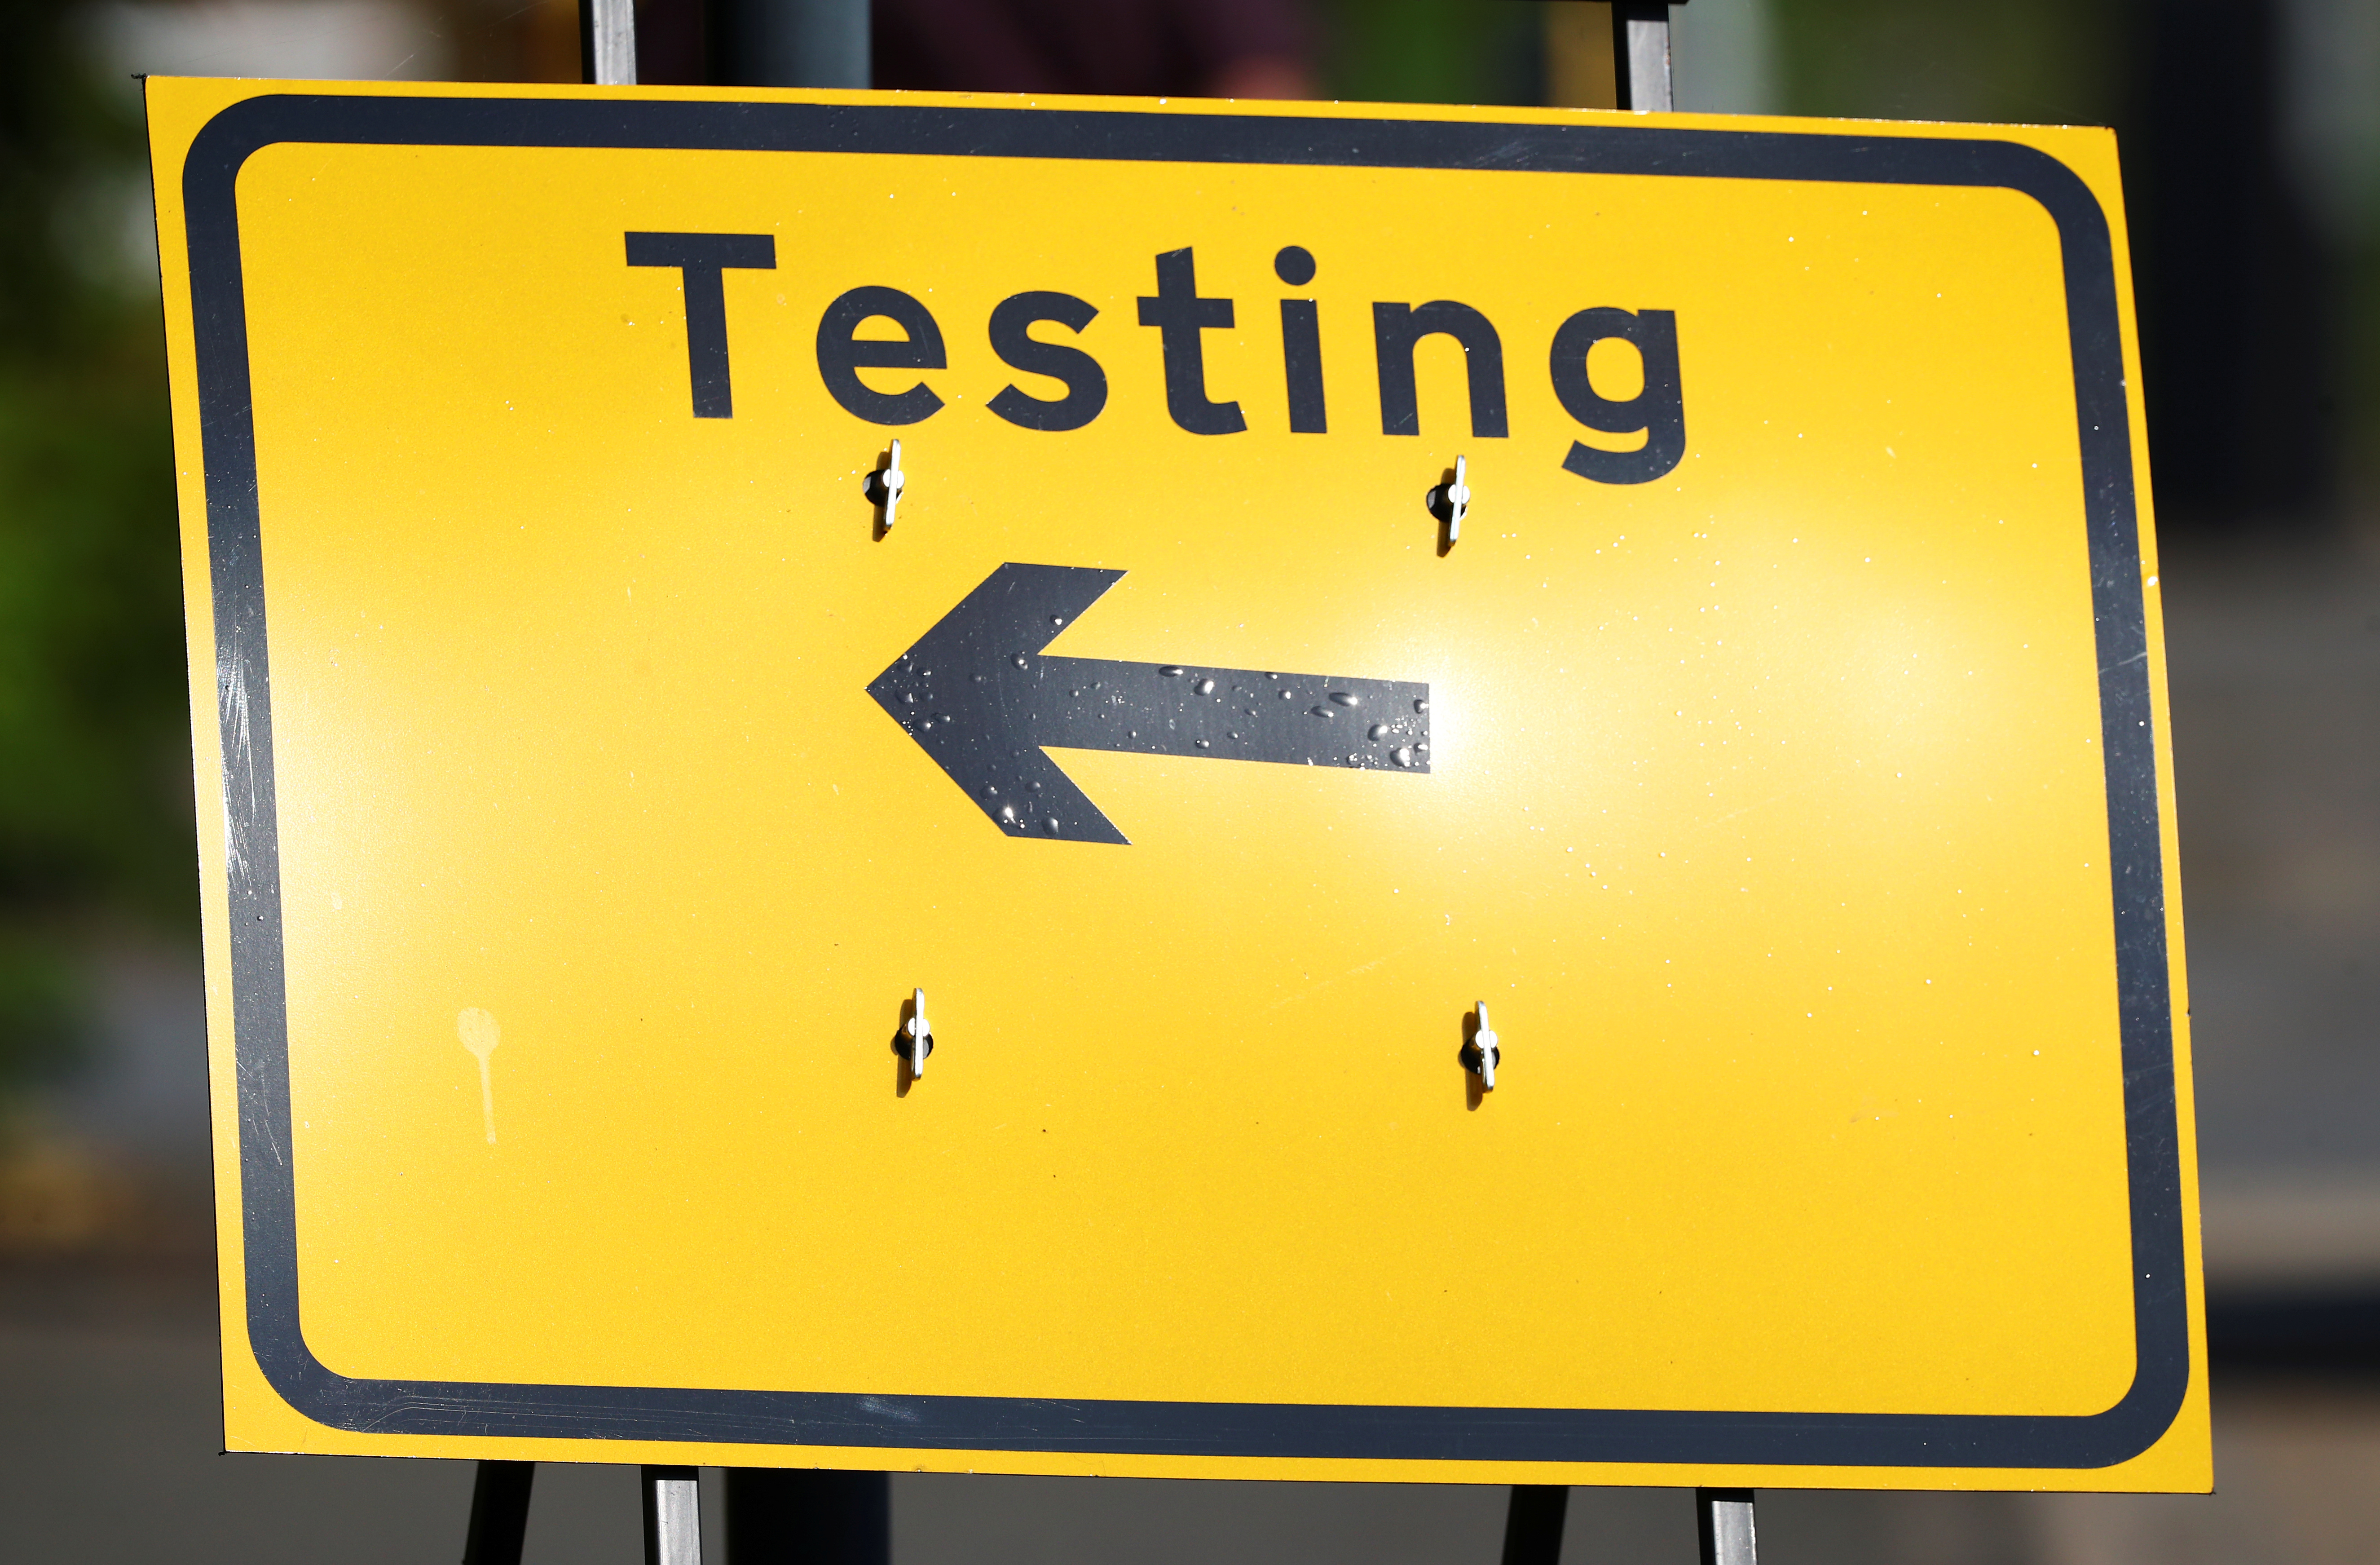 Los testeos se han casi frenado en todo el mundo, mientras aprendemos a convivir con el virus (REUTERS/Hannah McKay)